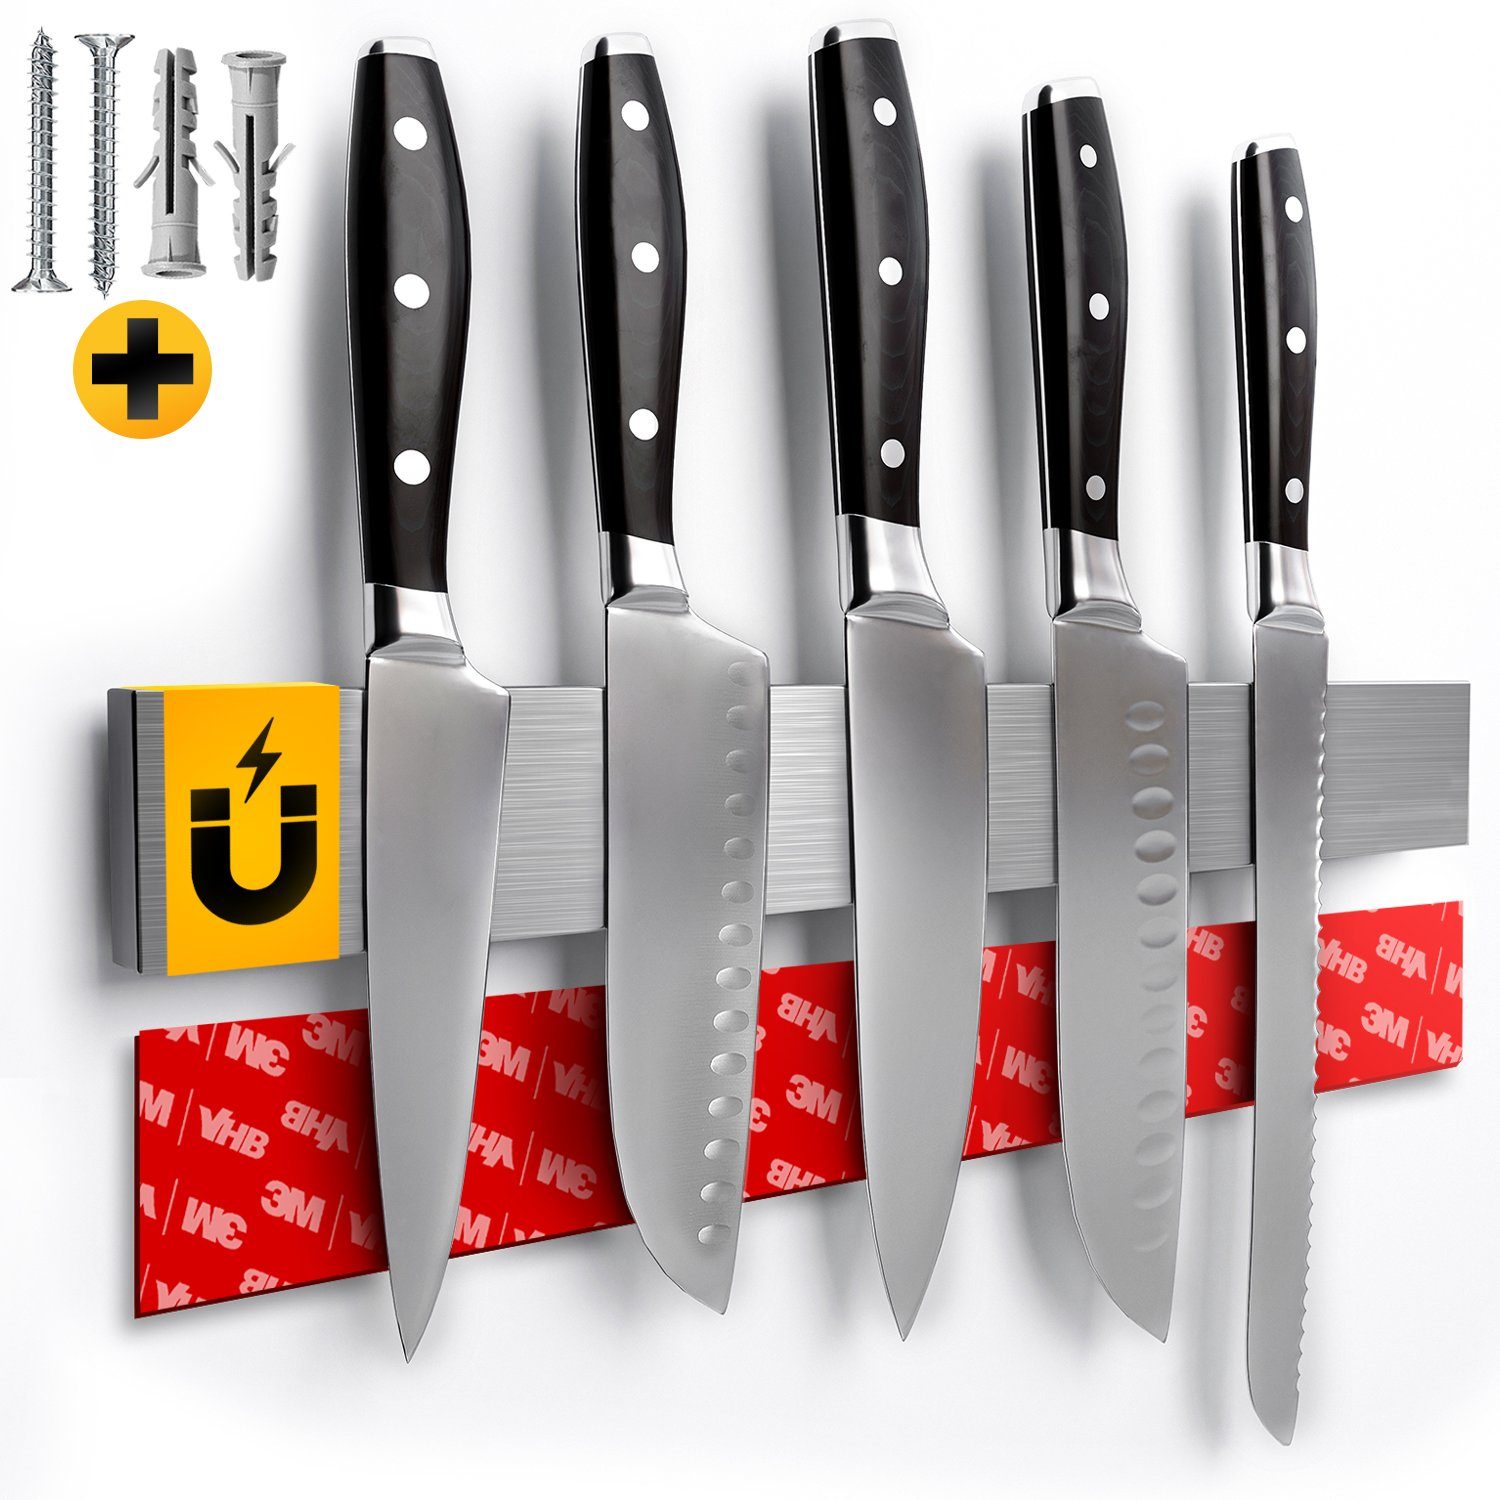 Loco Bird Wand-Magnet Messer-Leiste »Magnetleiste Messer 40cm -  selbstklebend mit 3M VHB Klebeband - Messerleiste Edelstahl für  Küchenutensilien oder Werkzeugen - Messerhalter magnetisch Wandmontage für  Küche ohne Bohren« (1tlg) online kaufen | OTTO